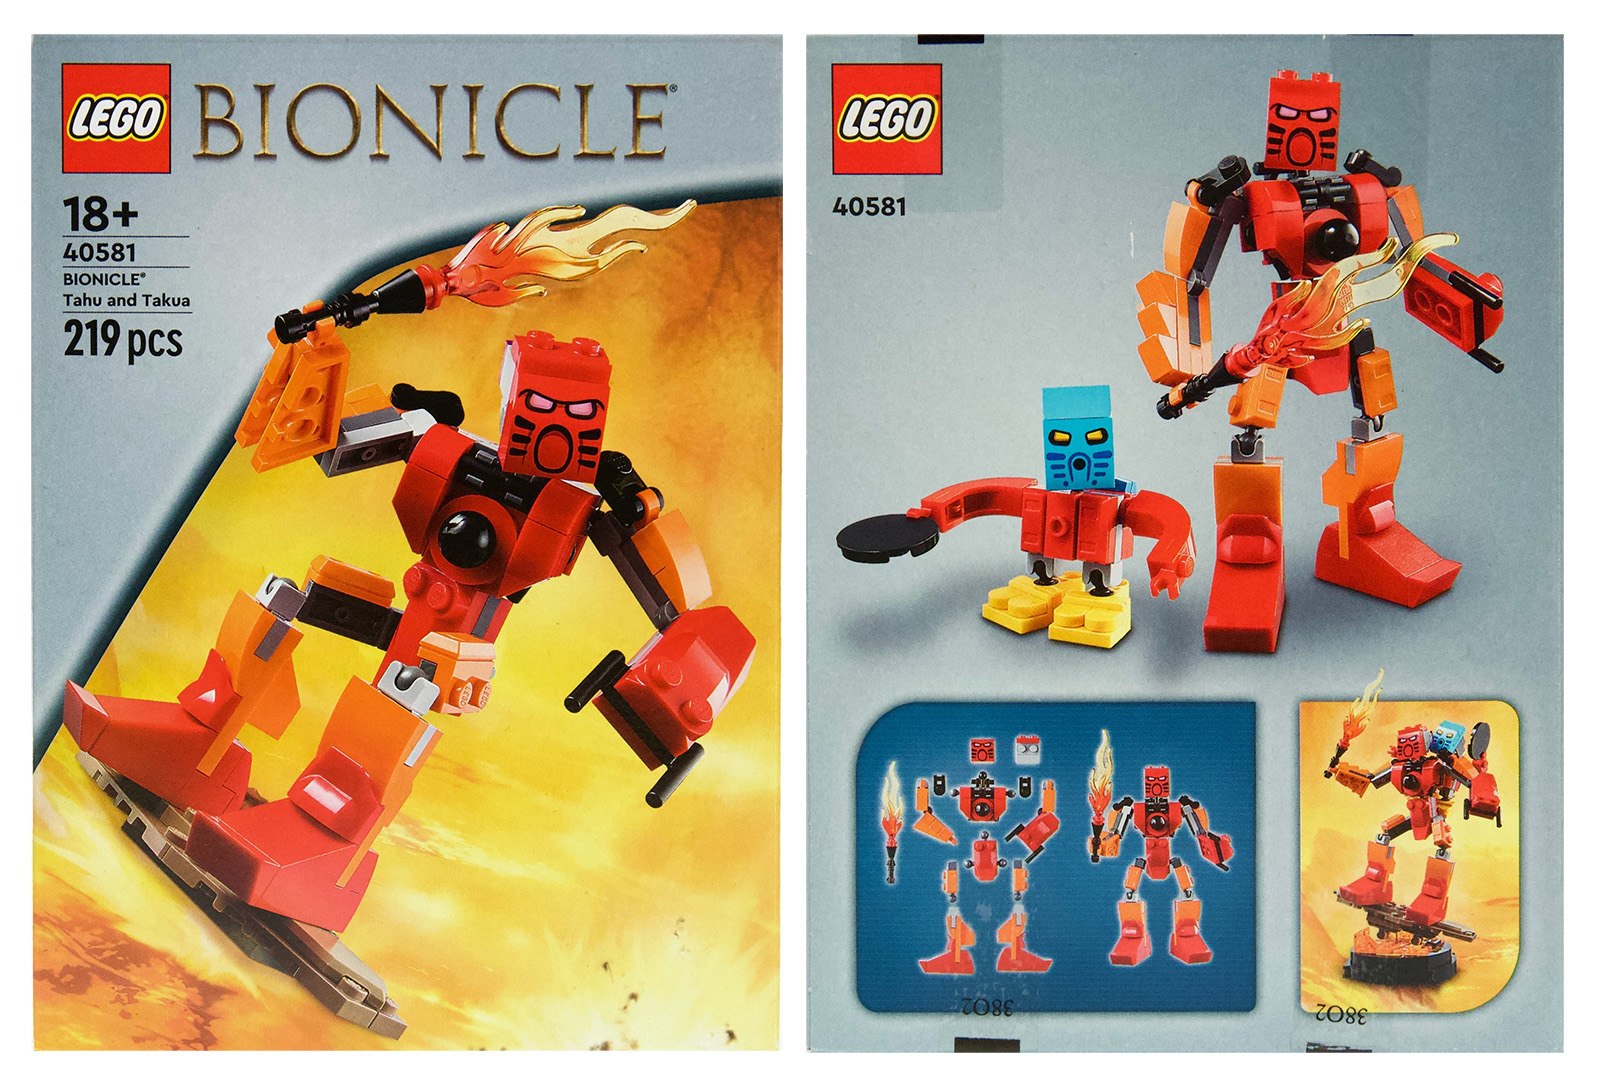 LEGO 40581 BIONICLE ტაჰუ და ტაკუა: ნაკრების პირველი ვიზუალი ხელმისაწვდომია 27 წლის 2023 იანვრიდან LEGO-ში